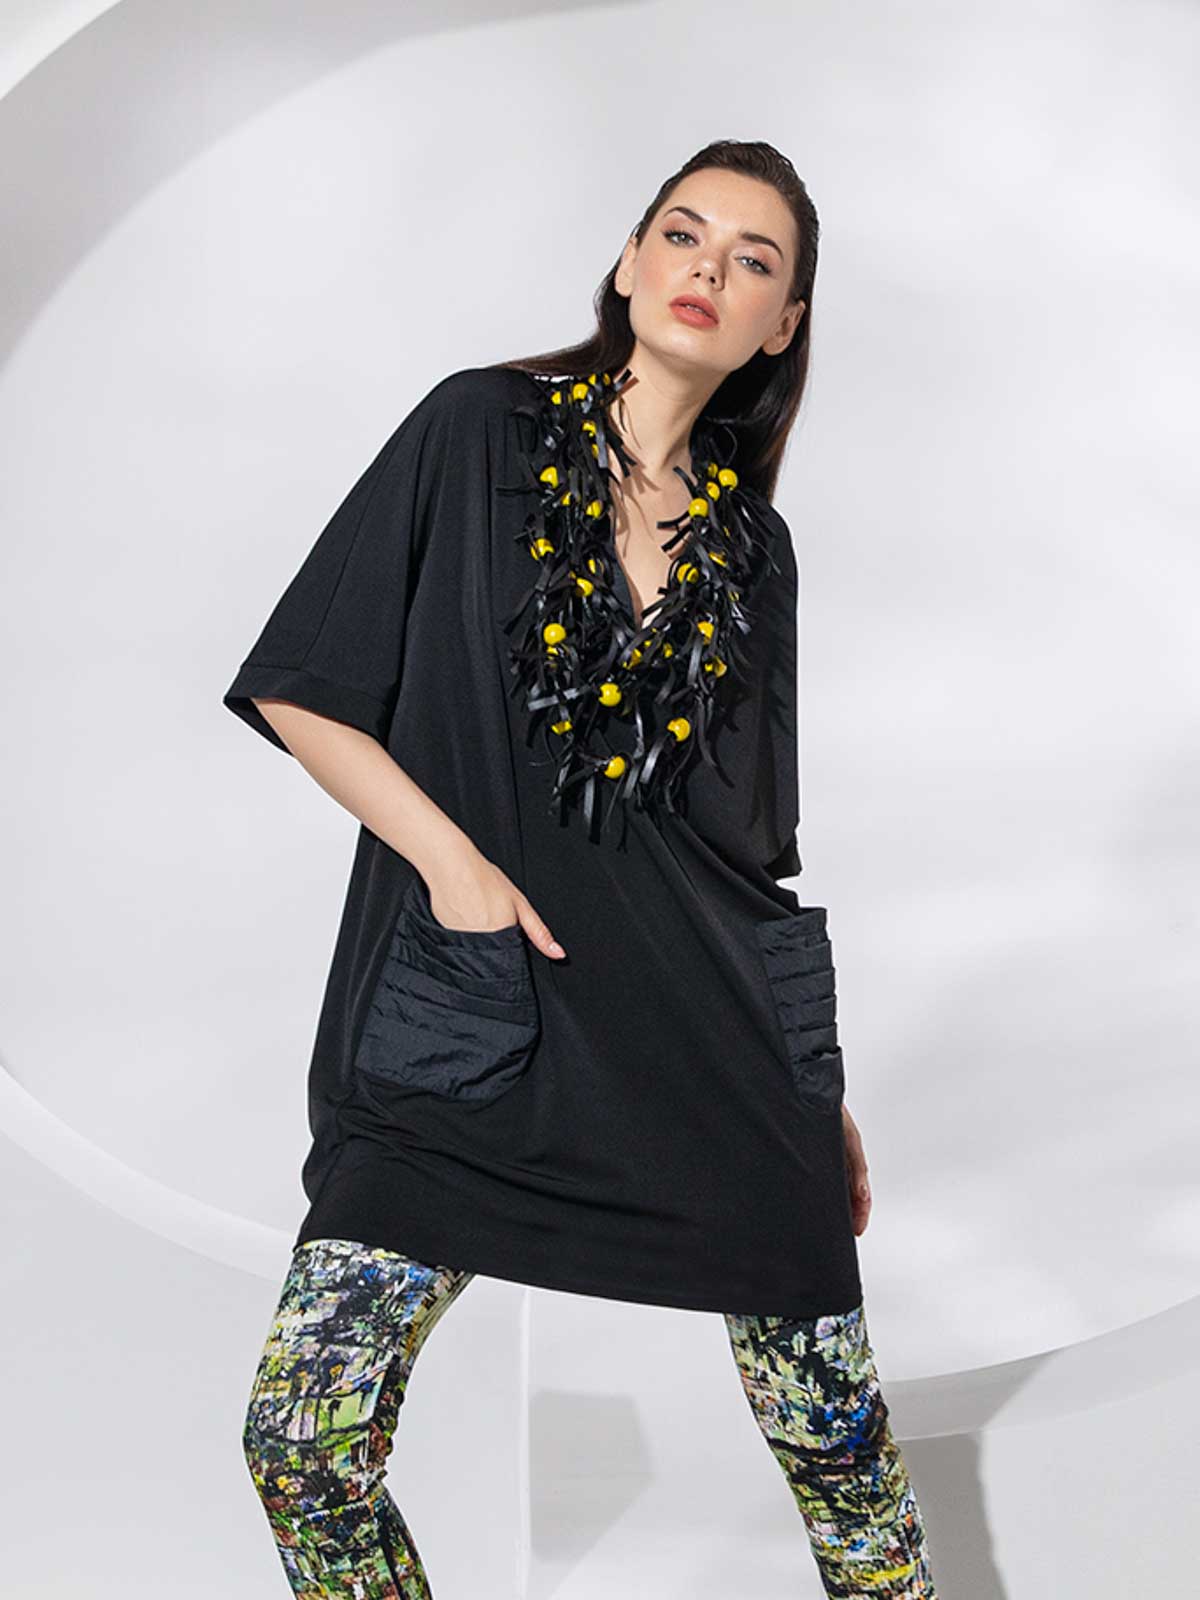 Kozan Derek Tunic Dress, Black Vogue - Statement Boutique